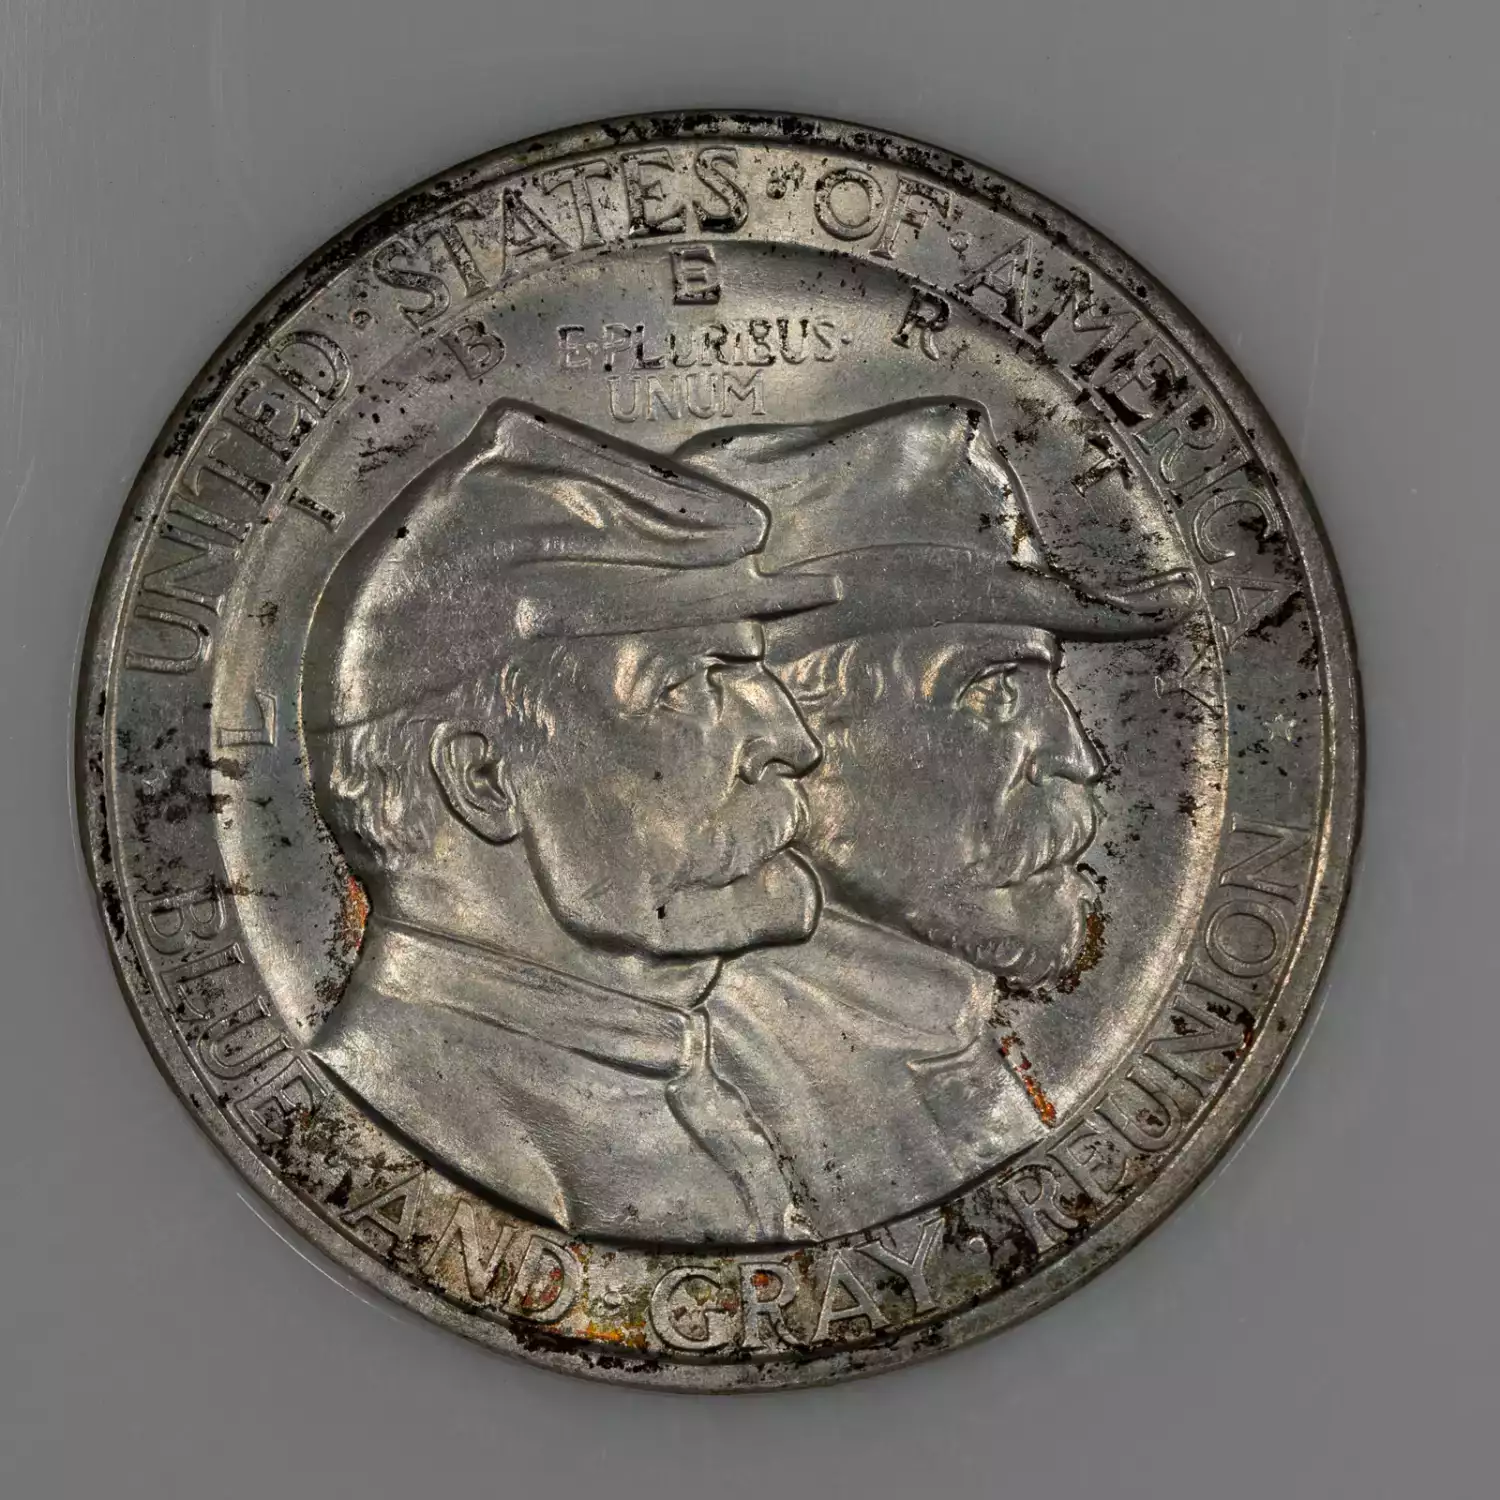 1936-PHILADELPHIA GETTYSBURG NGC MS-65 - Kearney Coin Center